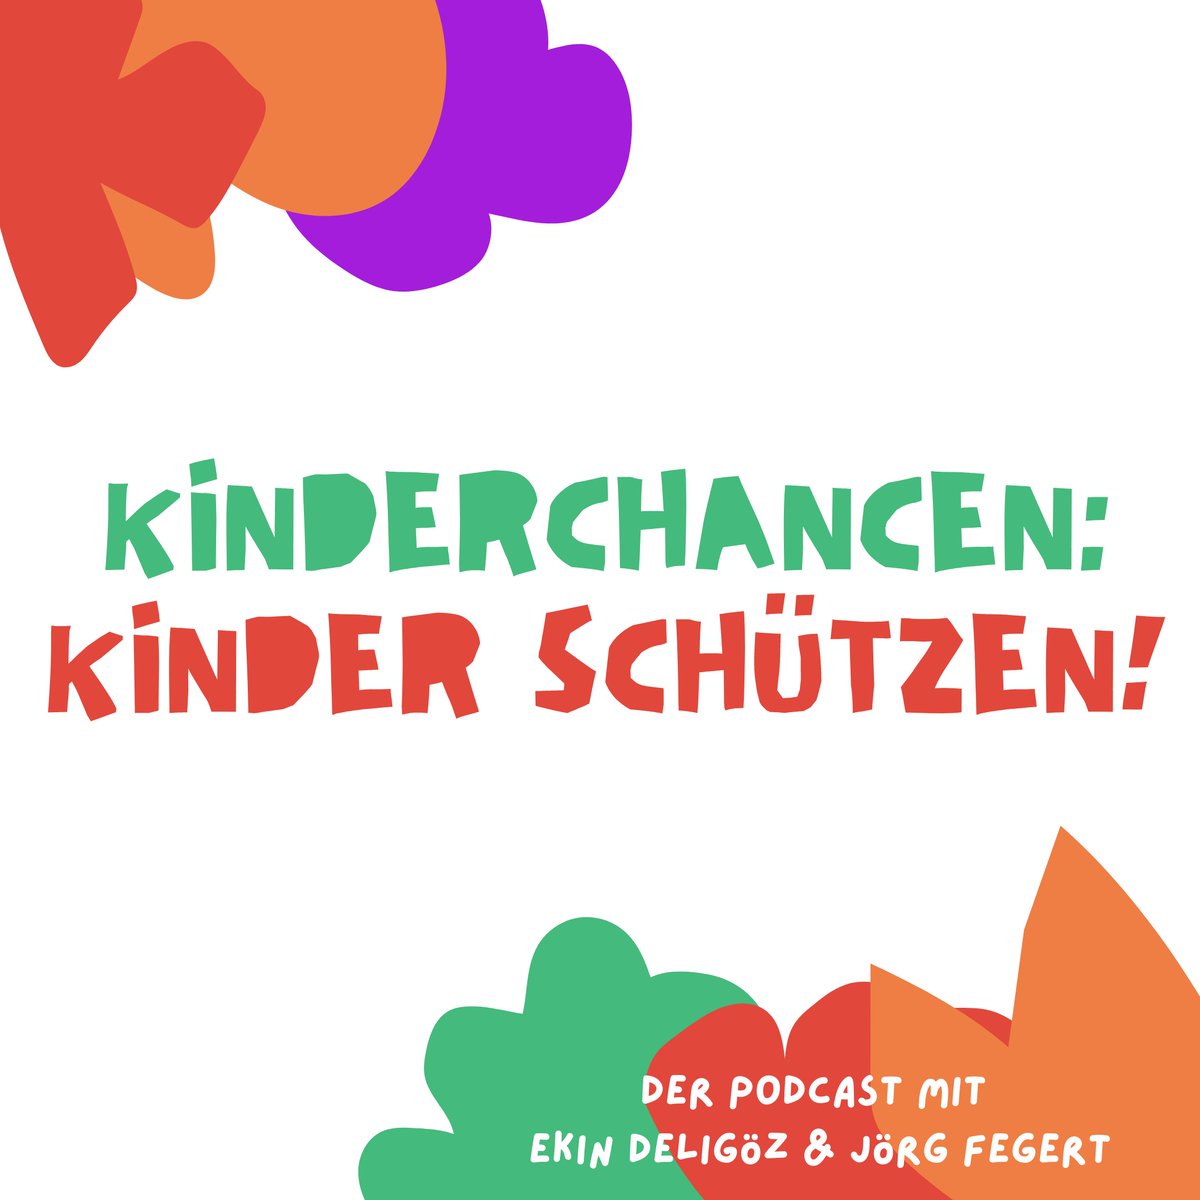 Um bessere Chancen für Kinder in Deutschland geht es im Podcast von @ekindeligoez & Prof. Dr. Jörg Fegert. Alle 14 Tage eine neue Folge „Kinderchancen: Kinder schützen“ - wir freuen uns drauf! 💙 …derchancen-kinderschuetzen.podigee.io

#kinderrechte #niemalsgewalt #Uniklinik #Ulm #BMFSFJ